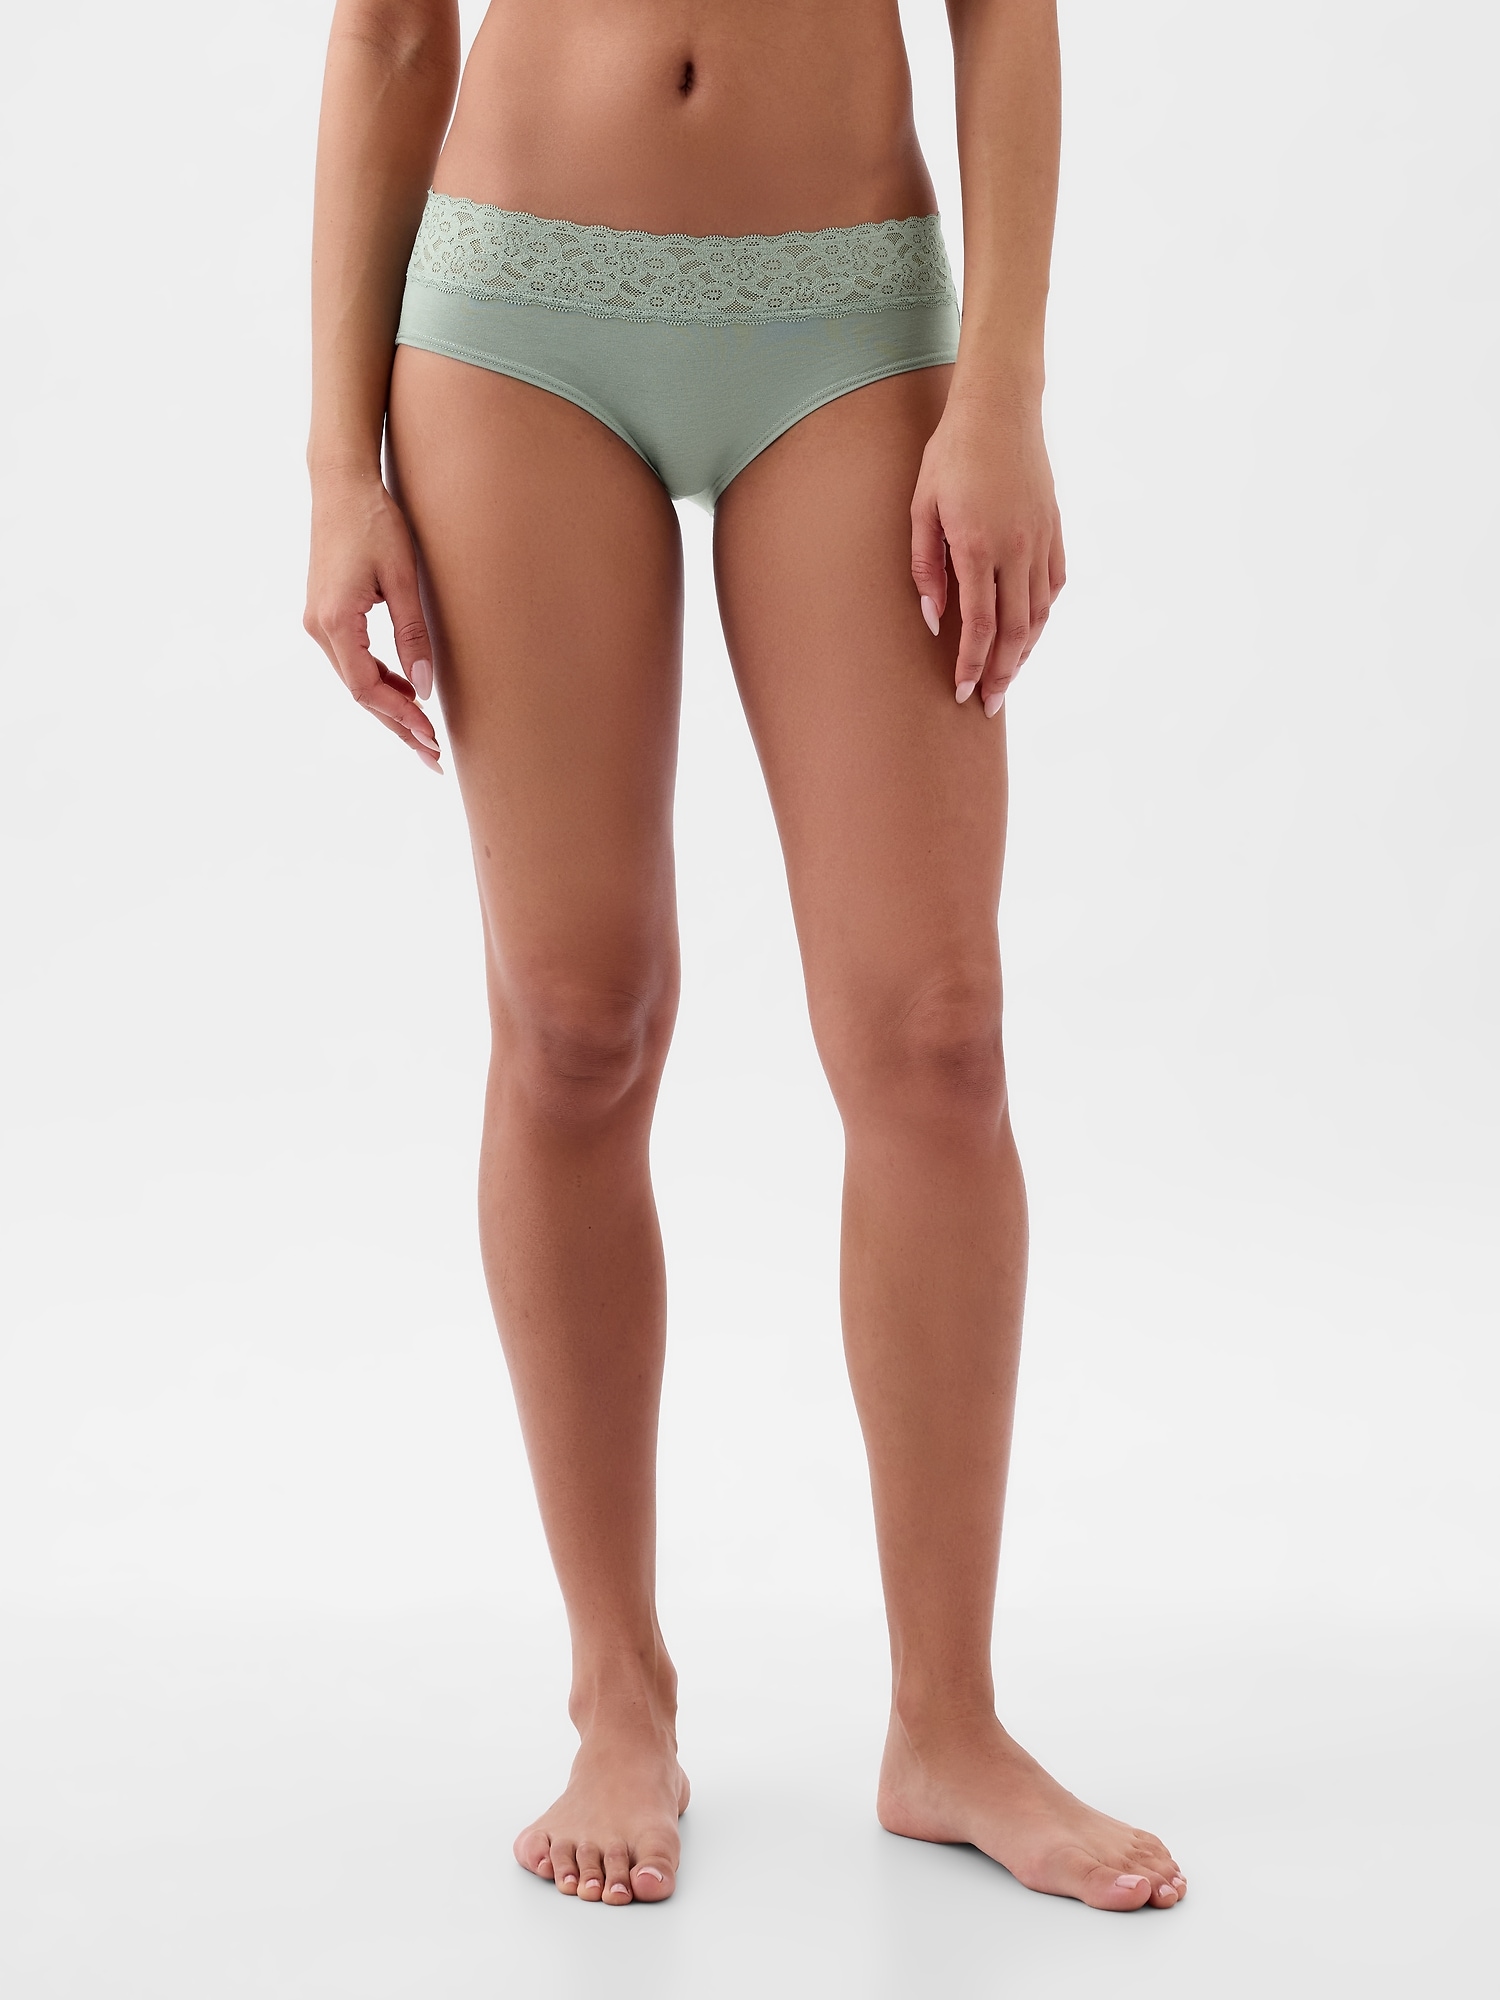 Gap Body Beige Lace Hipster Underwear Women's Size Medium NEW - beyond  exchange